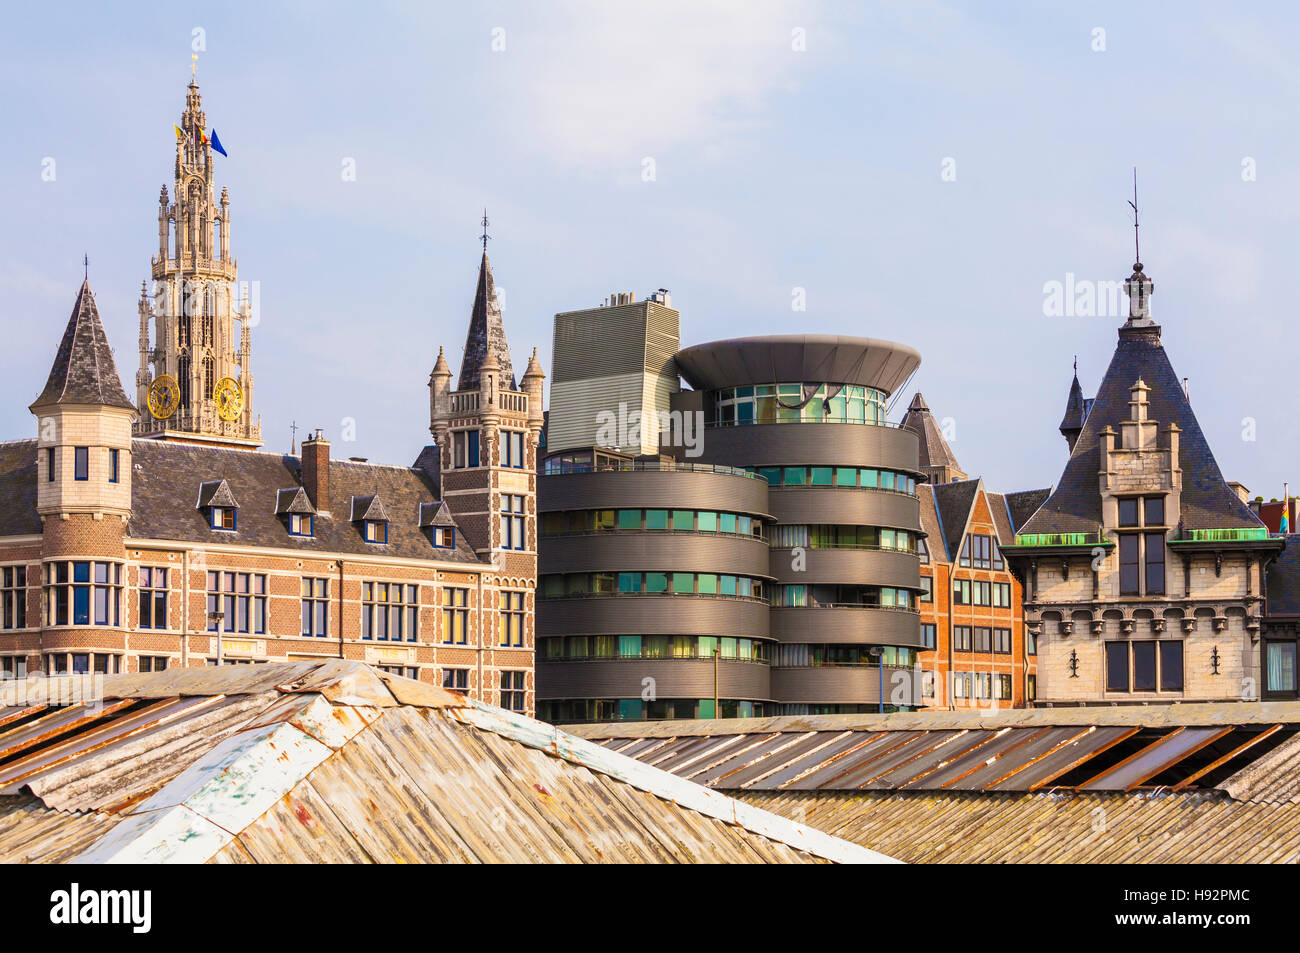 CITYSCAPE OF ANTWERP, FLANDERS, BELGIUM Stock Photo